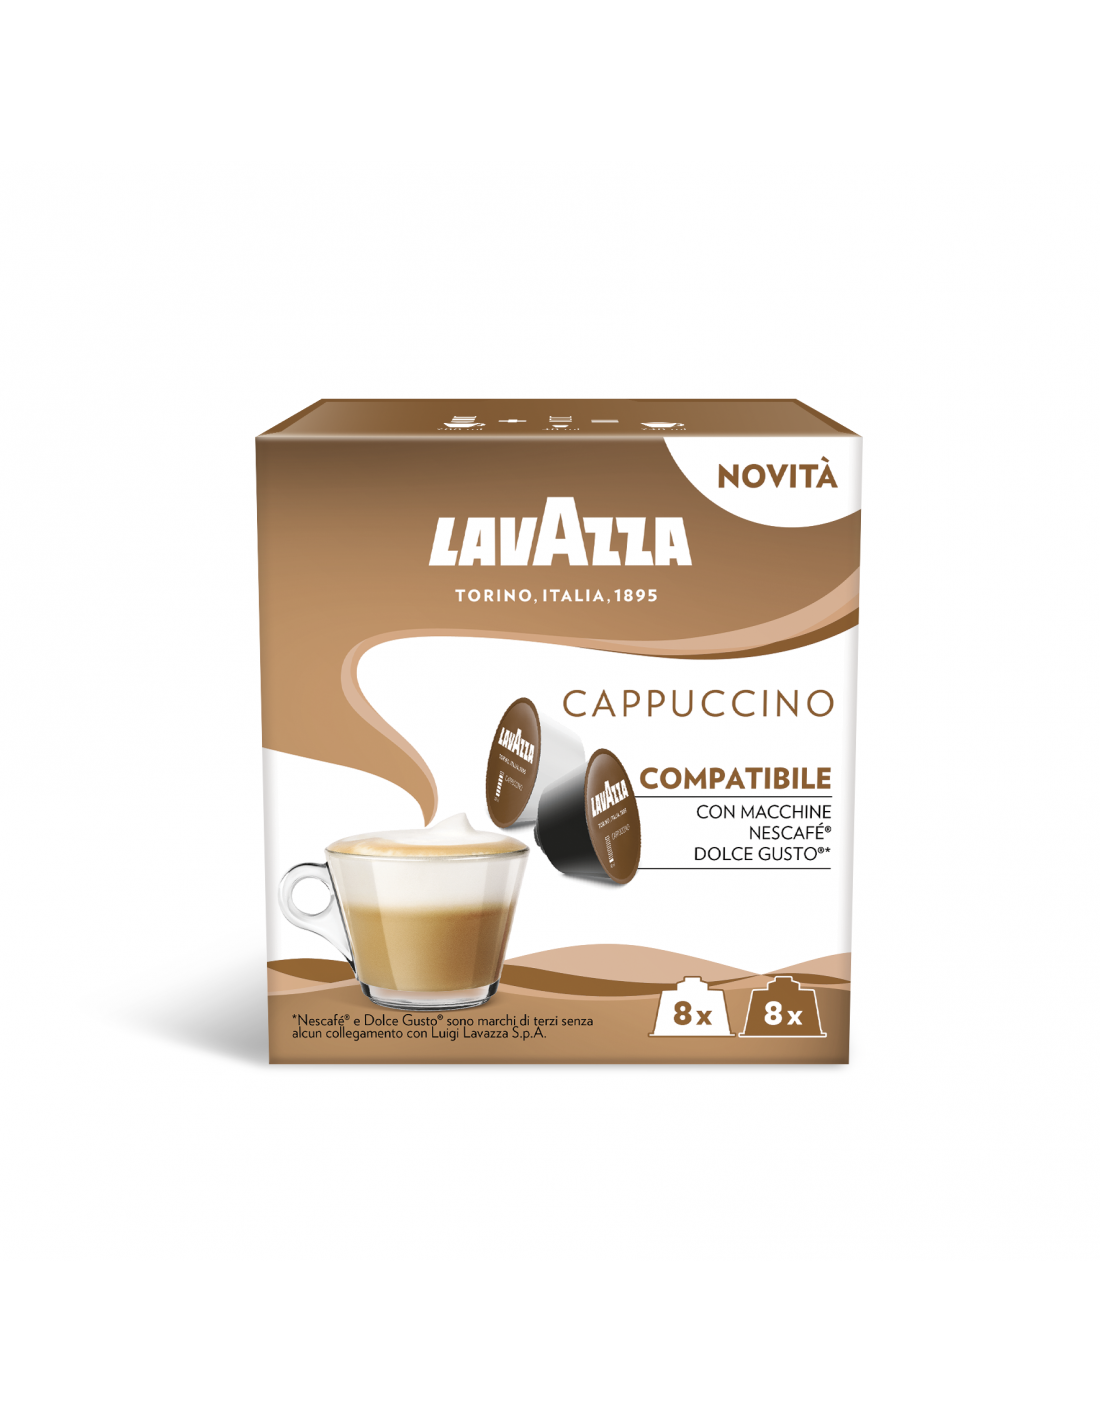 https://shop.tuttocapsule.it/784-thickbox_default/96-capsule-lavazza-cappuccino-compatibile-con-nescaf%C3%A8-dolce-gusto%C2%AE-6x16caps.jpg